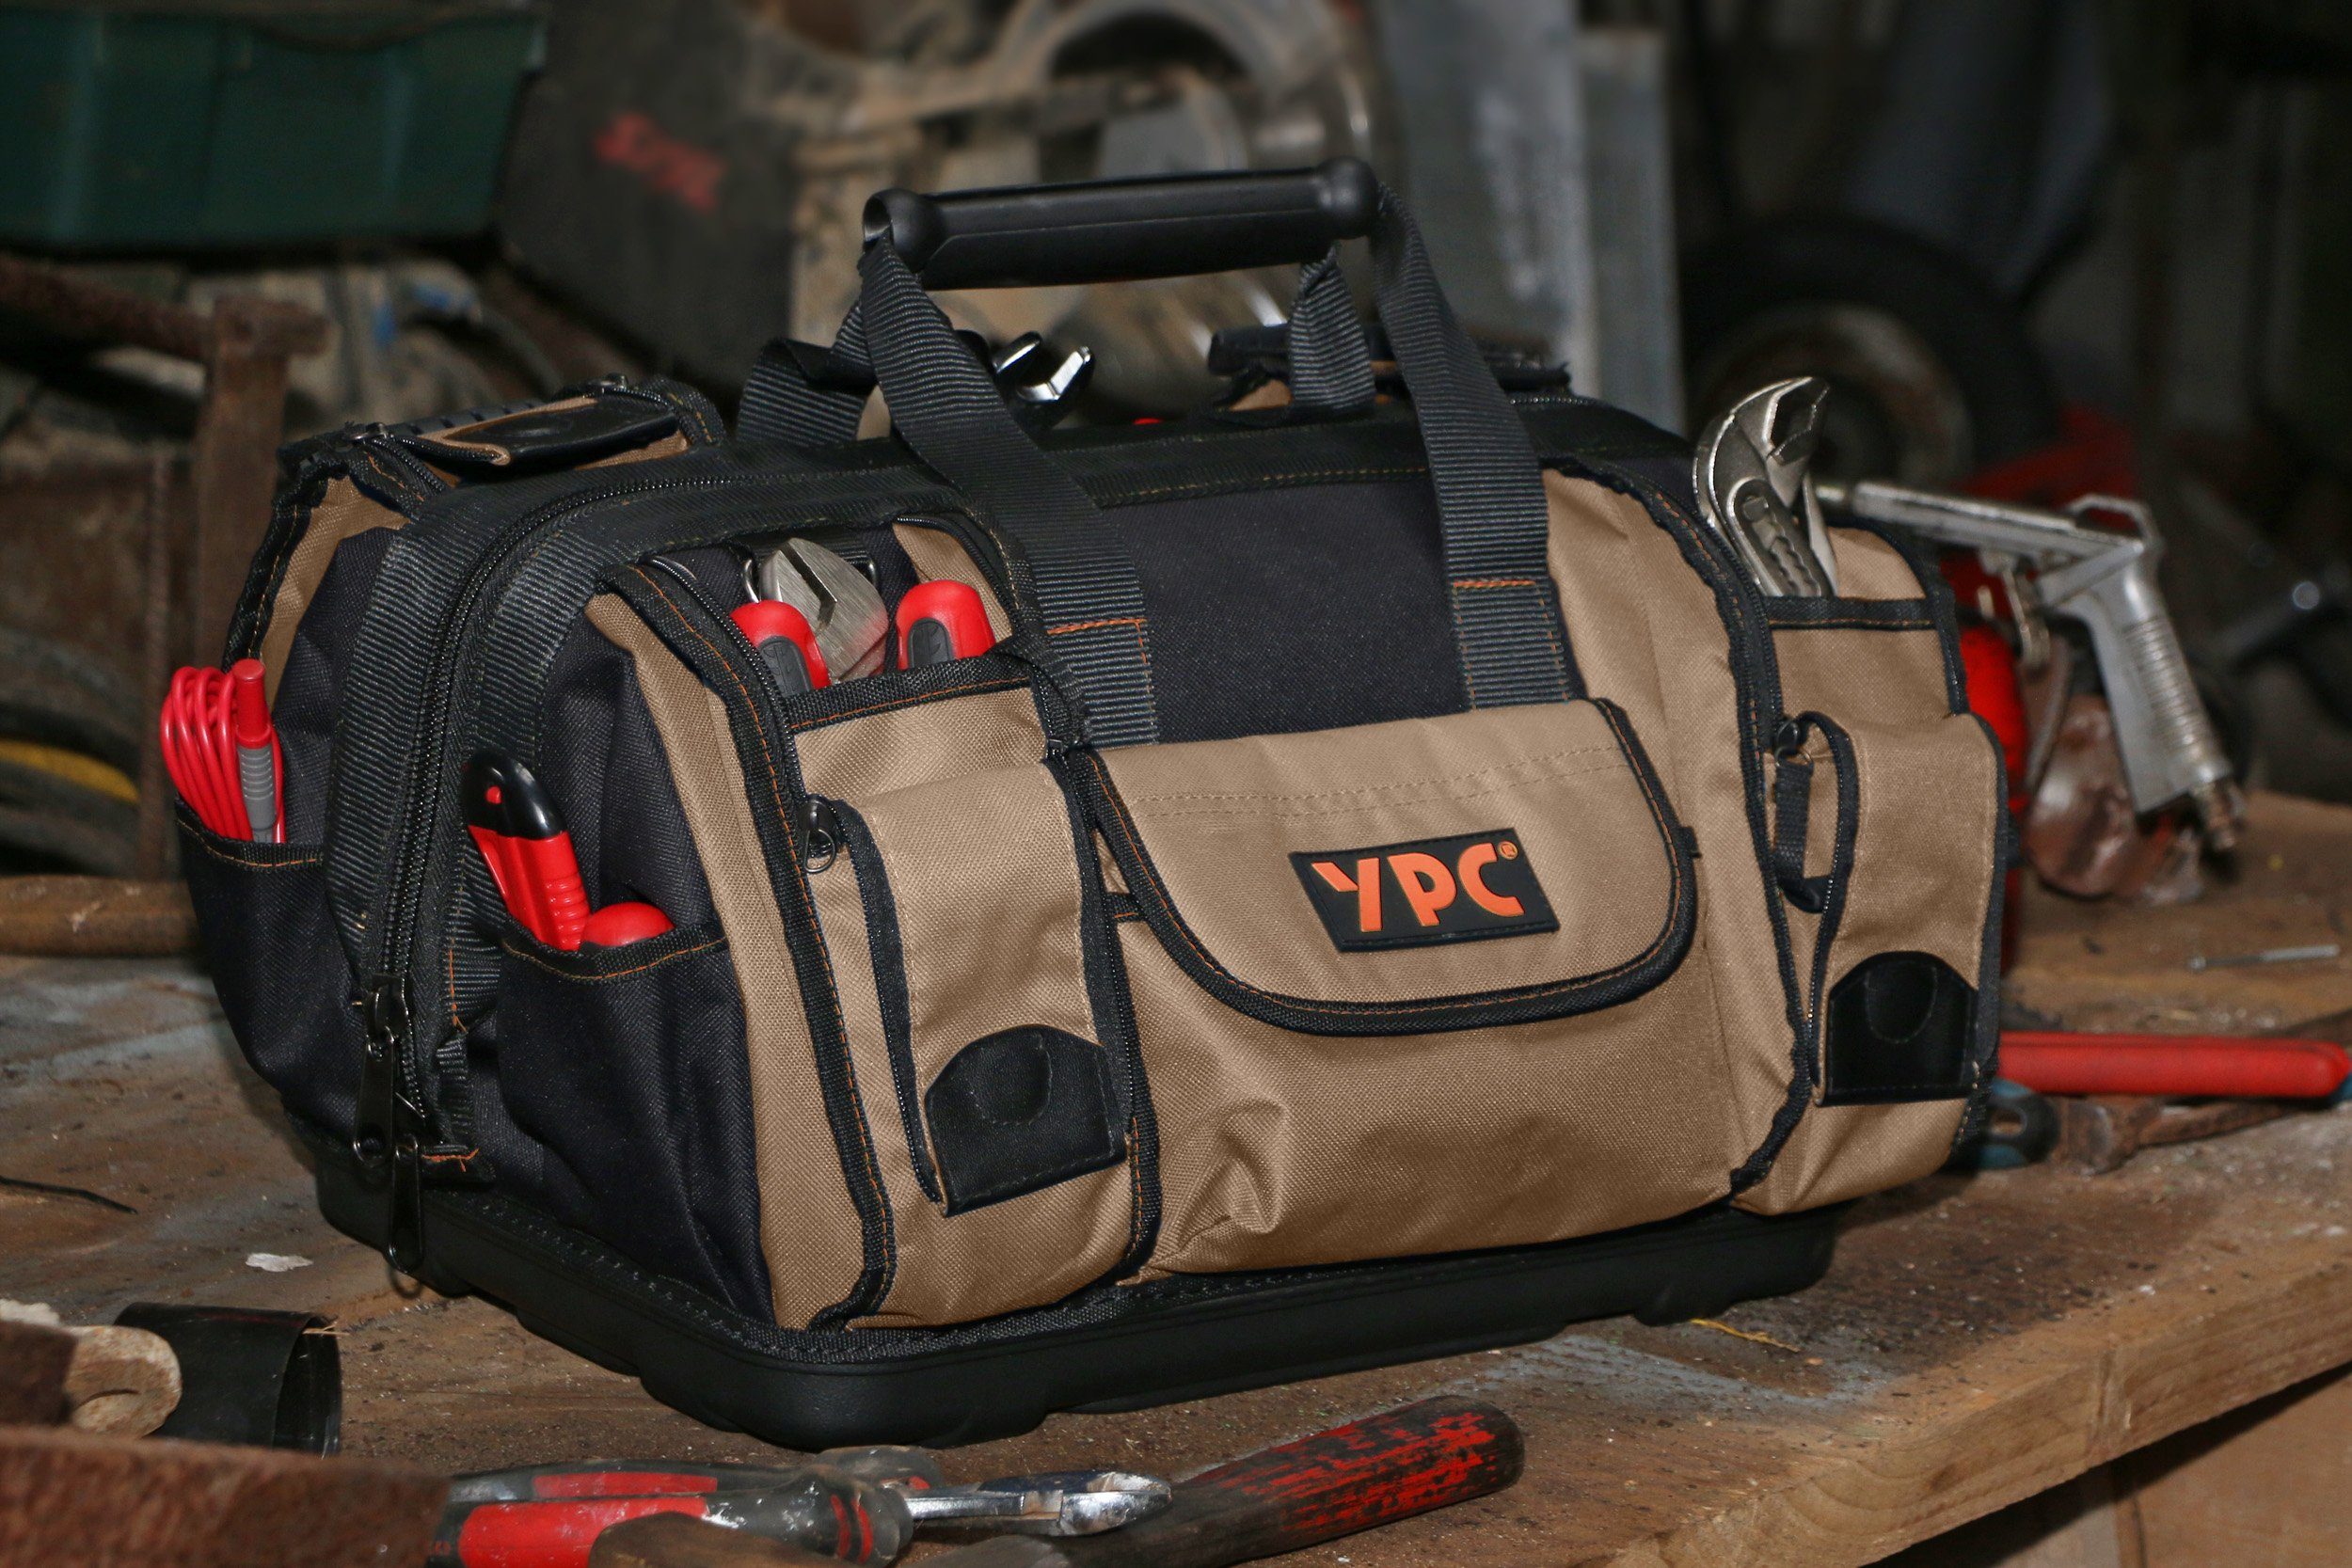 Umhängetasche 40 / Liter Beige XXL, Outdoor- Sporttasche Werkzeugtasche 42x30x25cm, und YPC